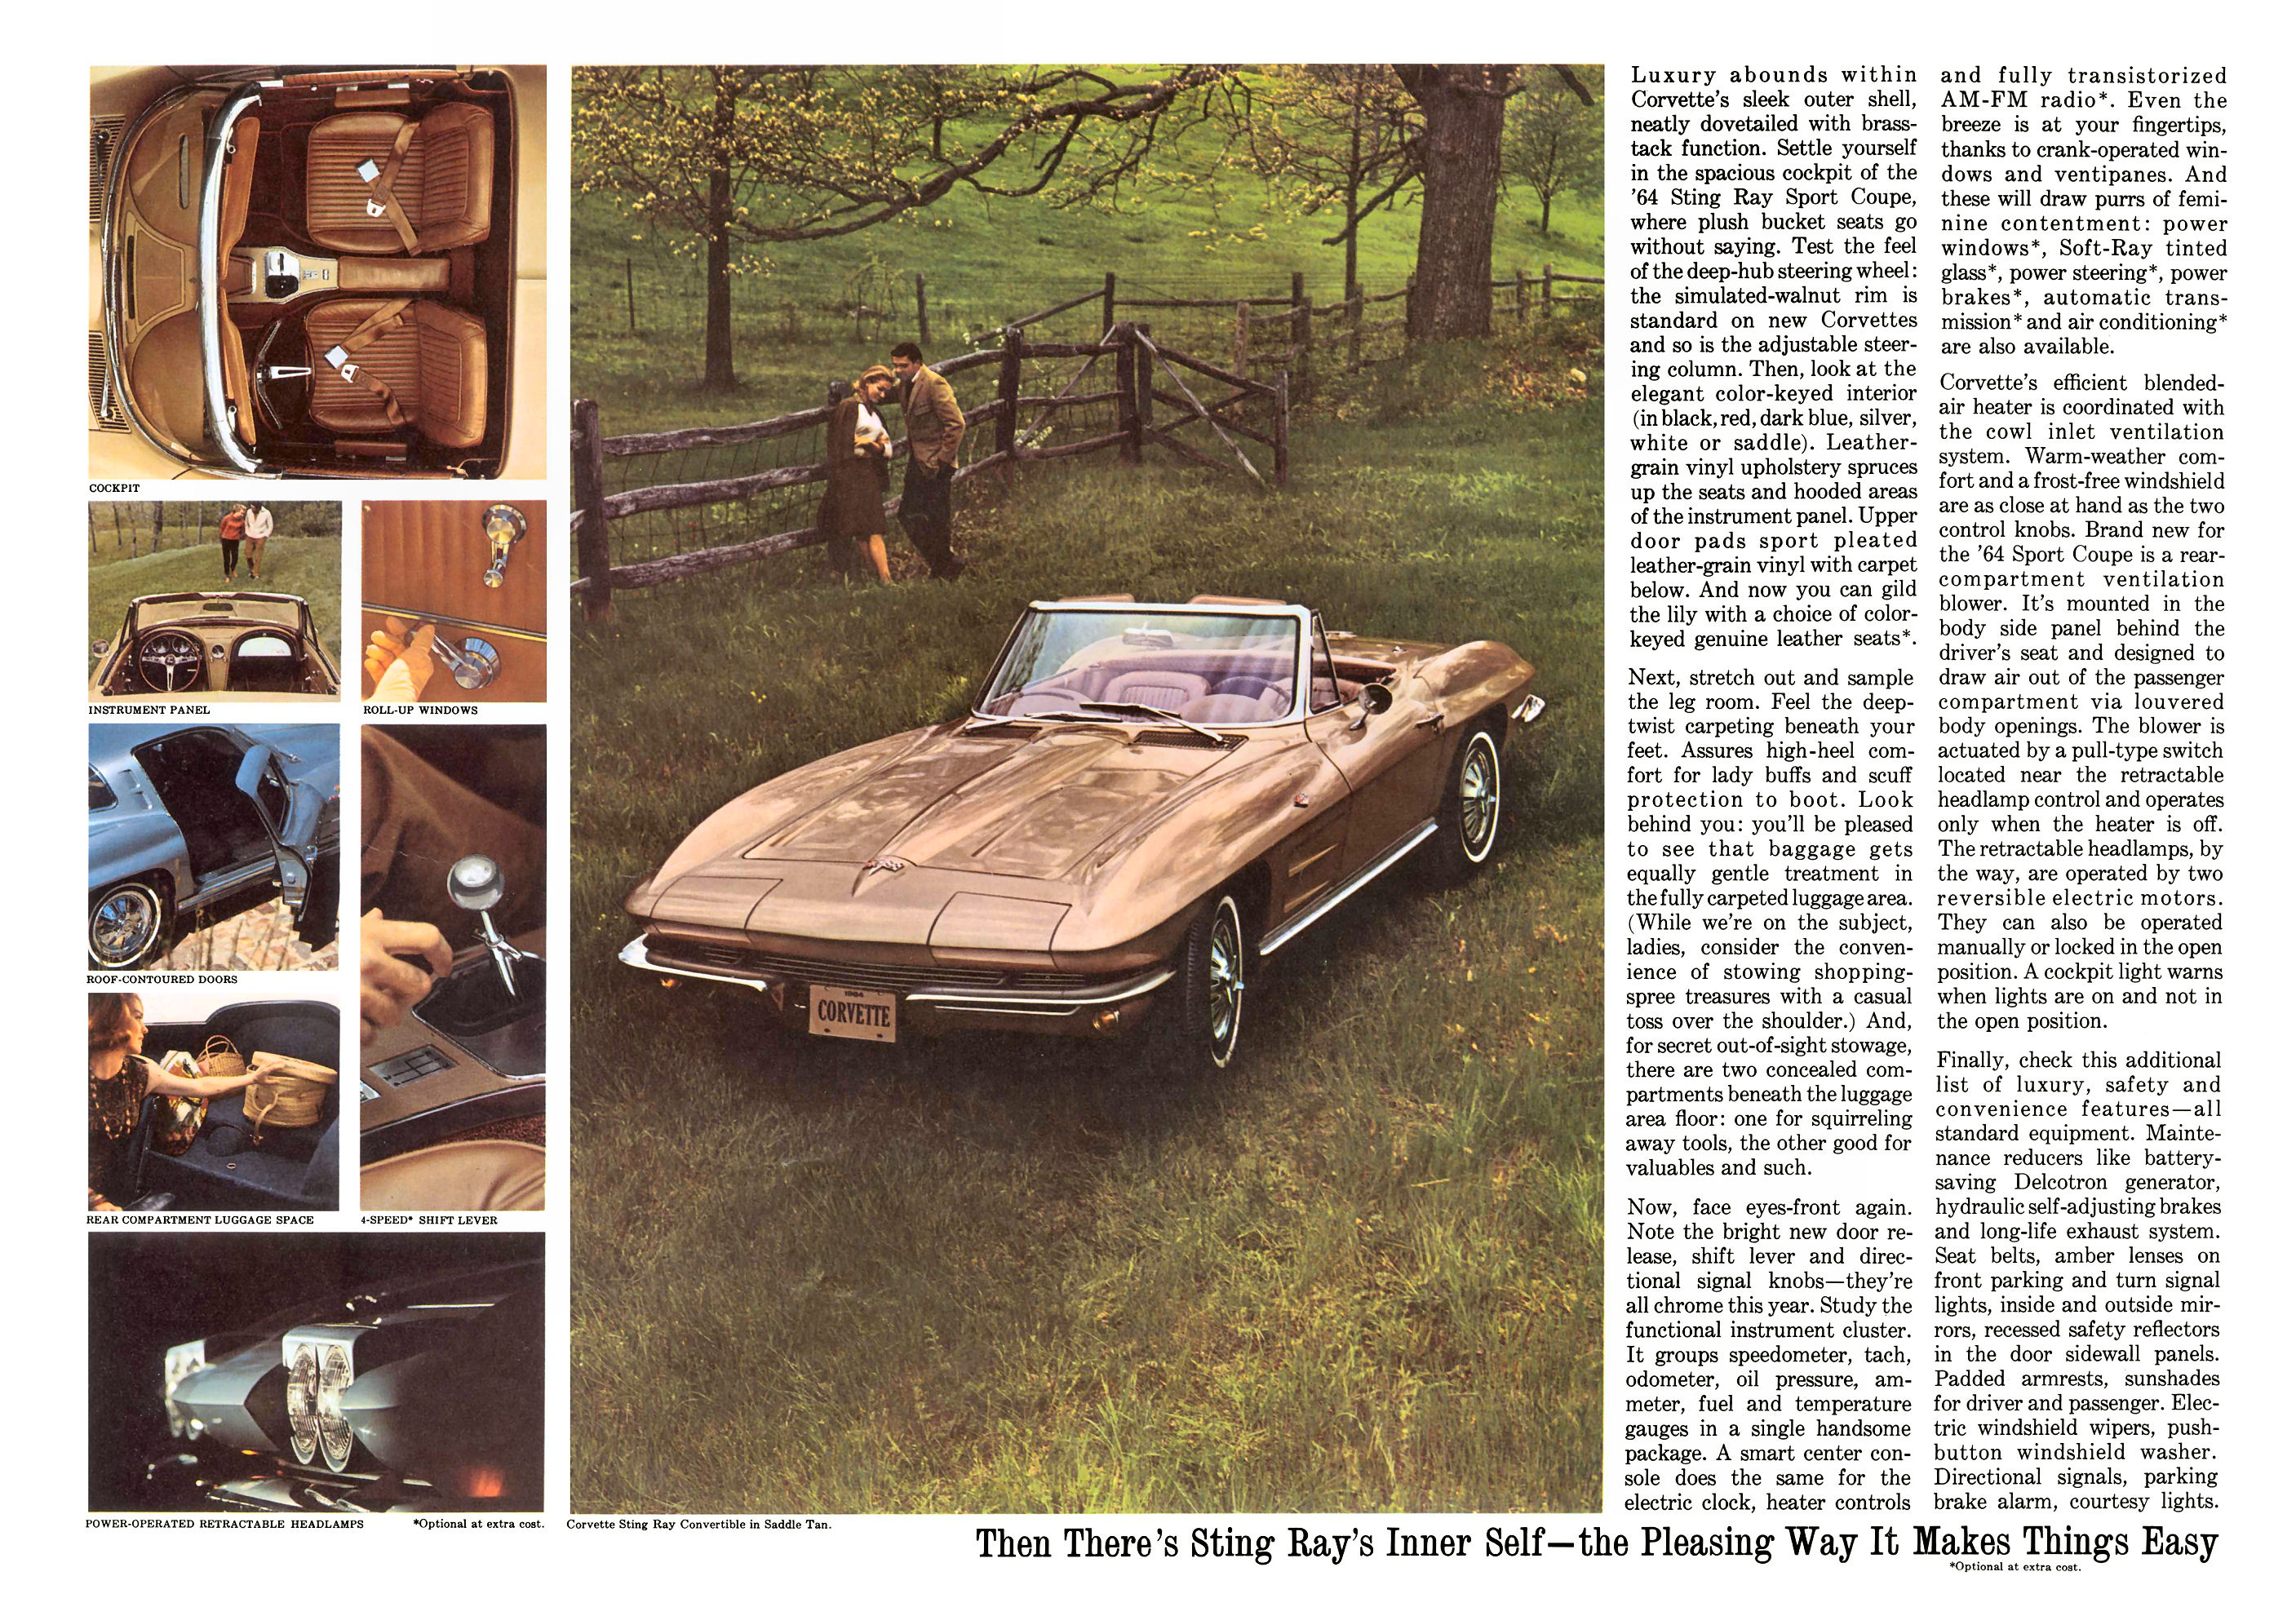 1964_Chevrolet_Corvette-04-05